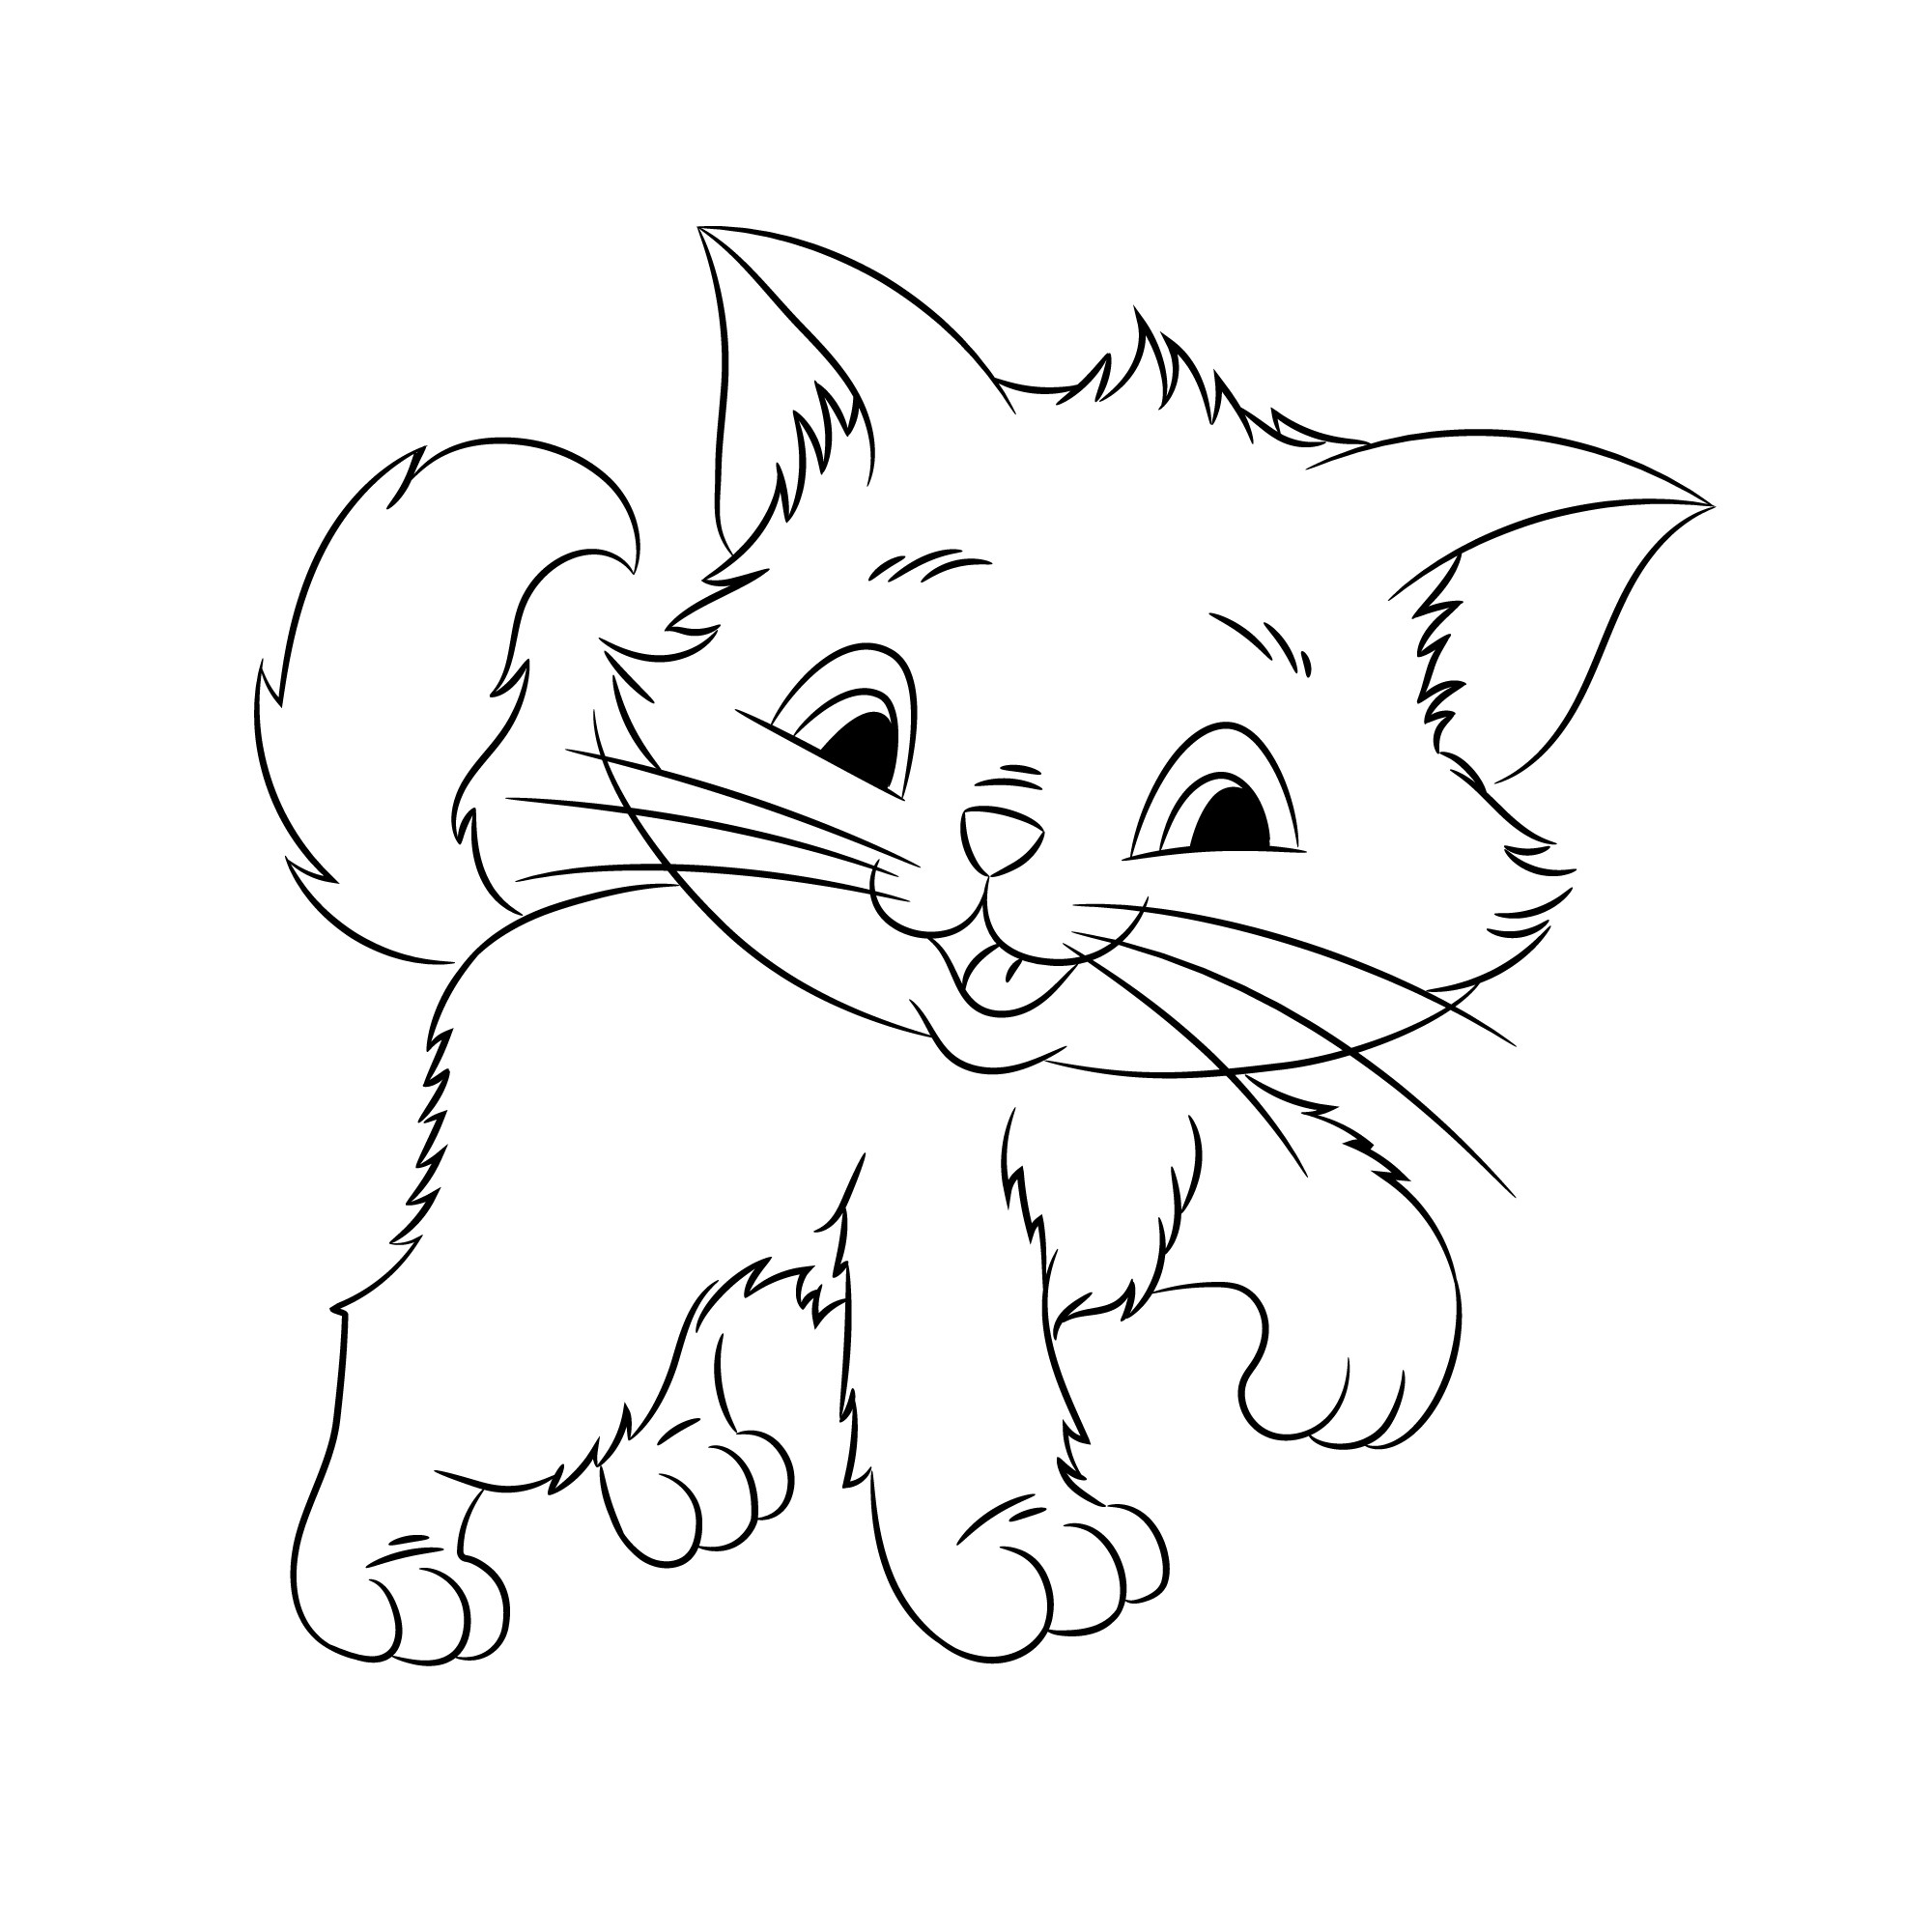 Раскраска для детей: пушистый котенок с милым взглядом